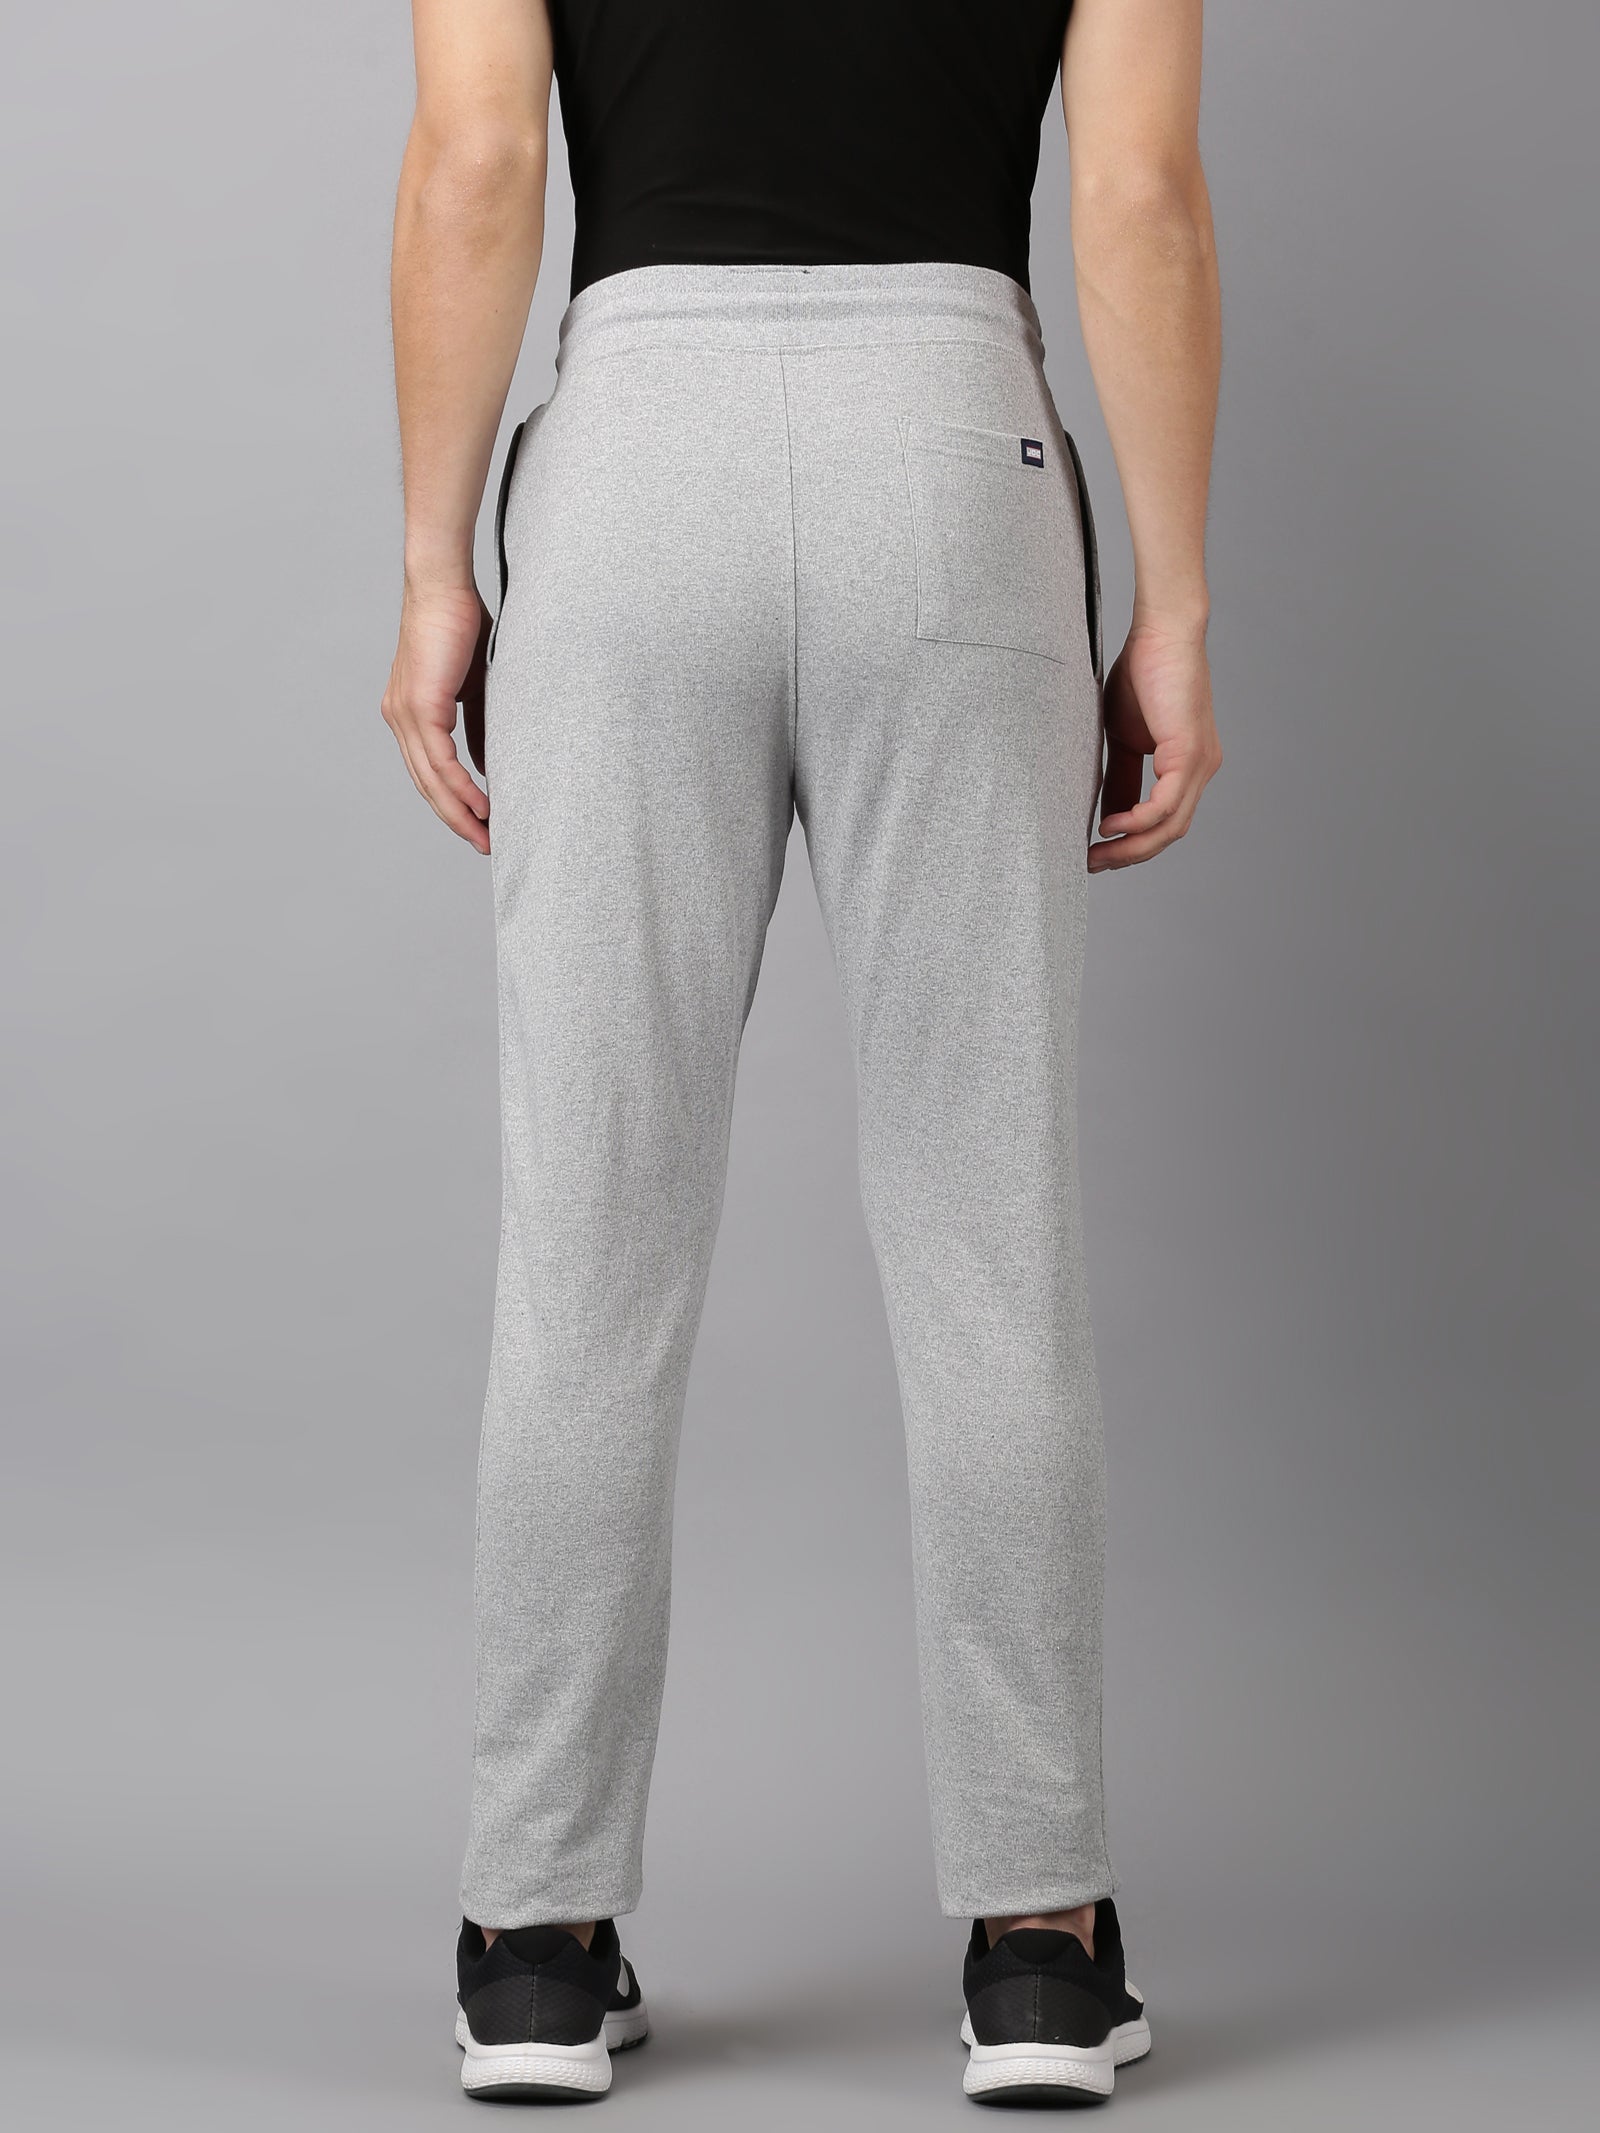 Pack of 2 Lycra Strip Line Regular Fit Running Track Pants Grey  Lig   Shopperfab